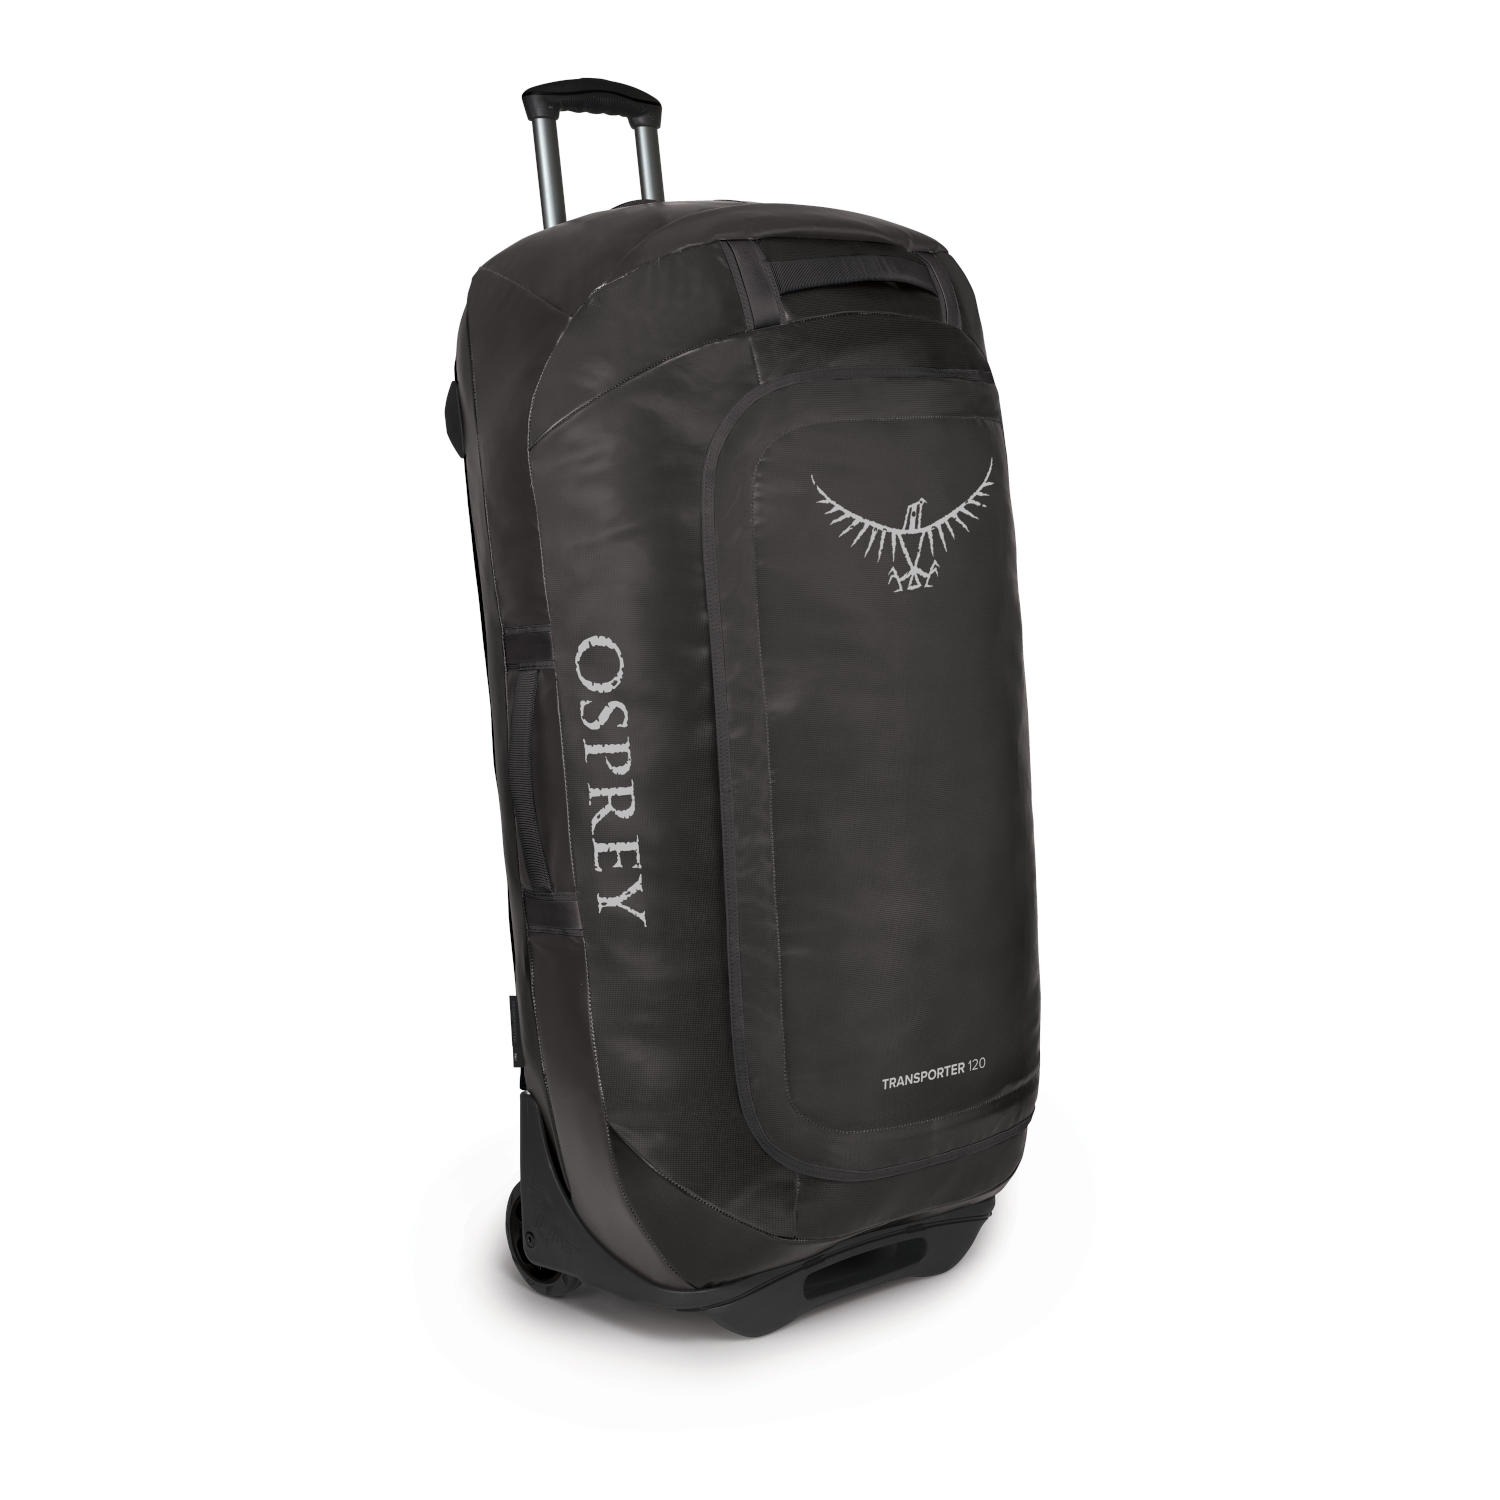 Productfoto van Osprey Rolling Transporter 120 Travel Bag - Black